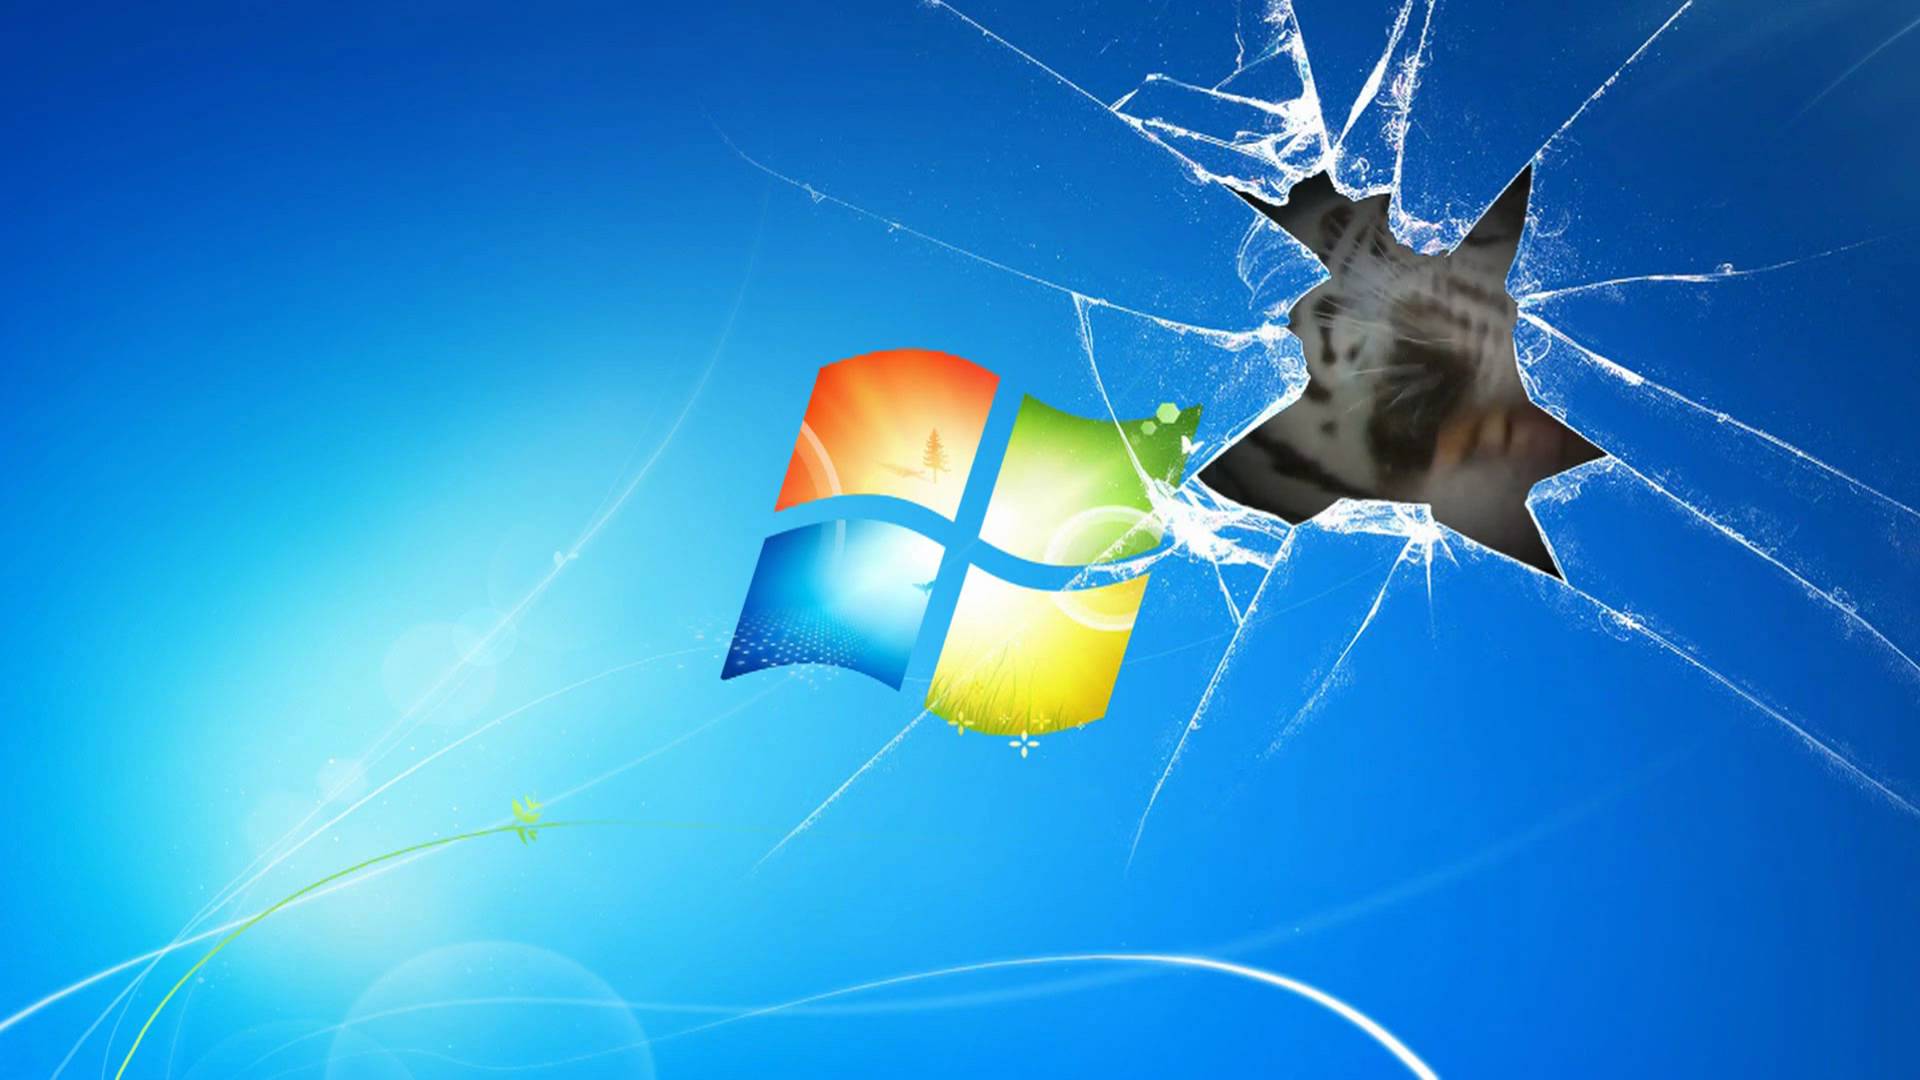 Windows 7 Wallpaper Animated Tiger on broken screen